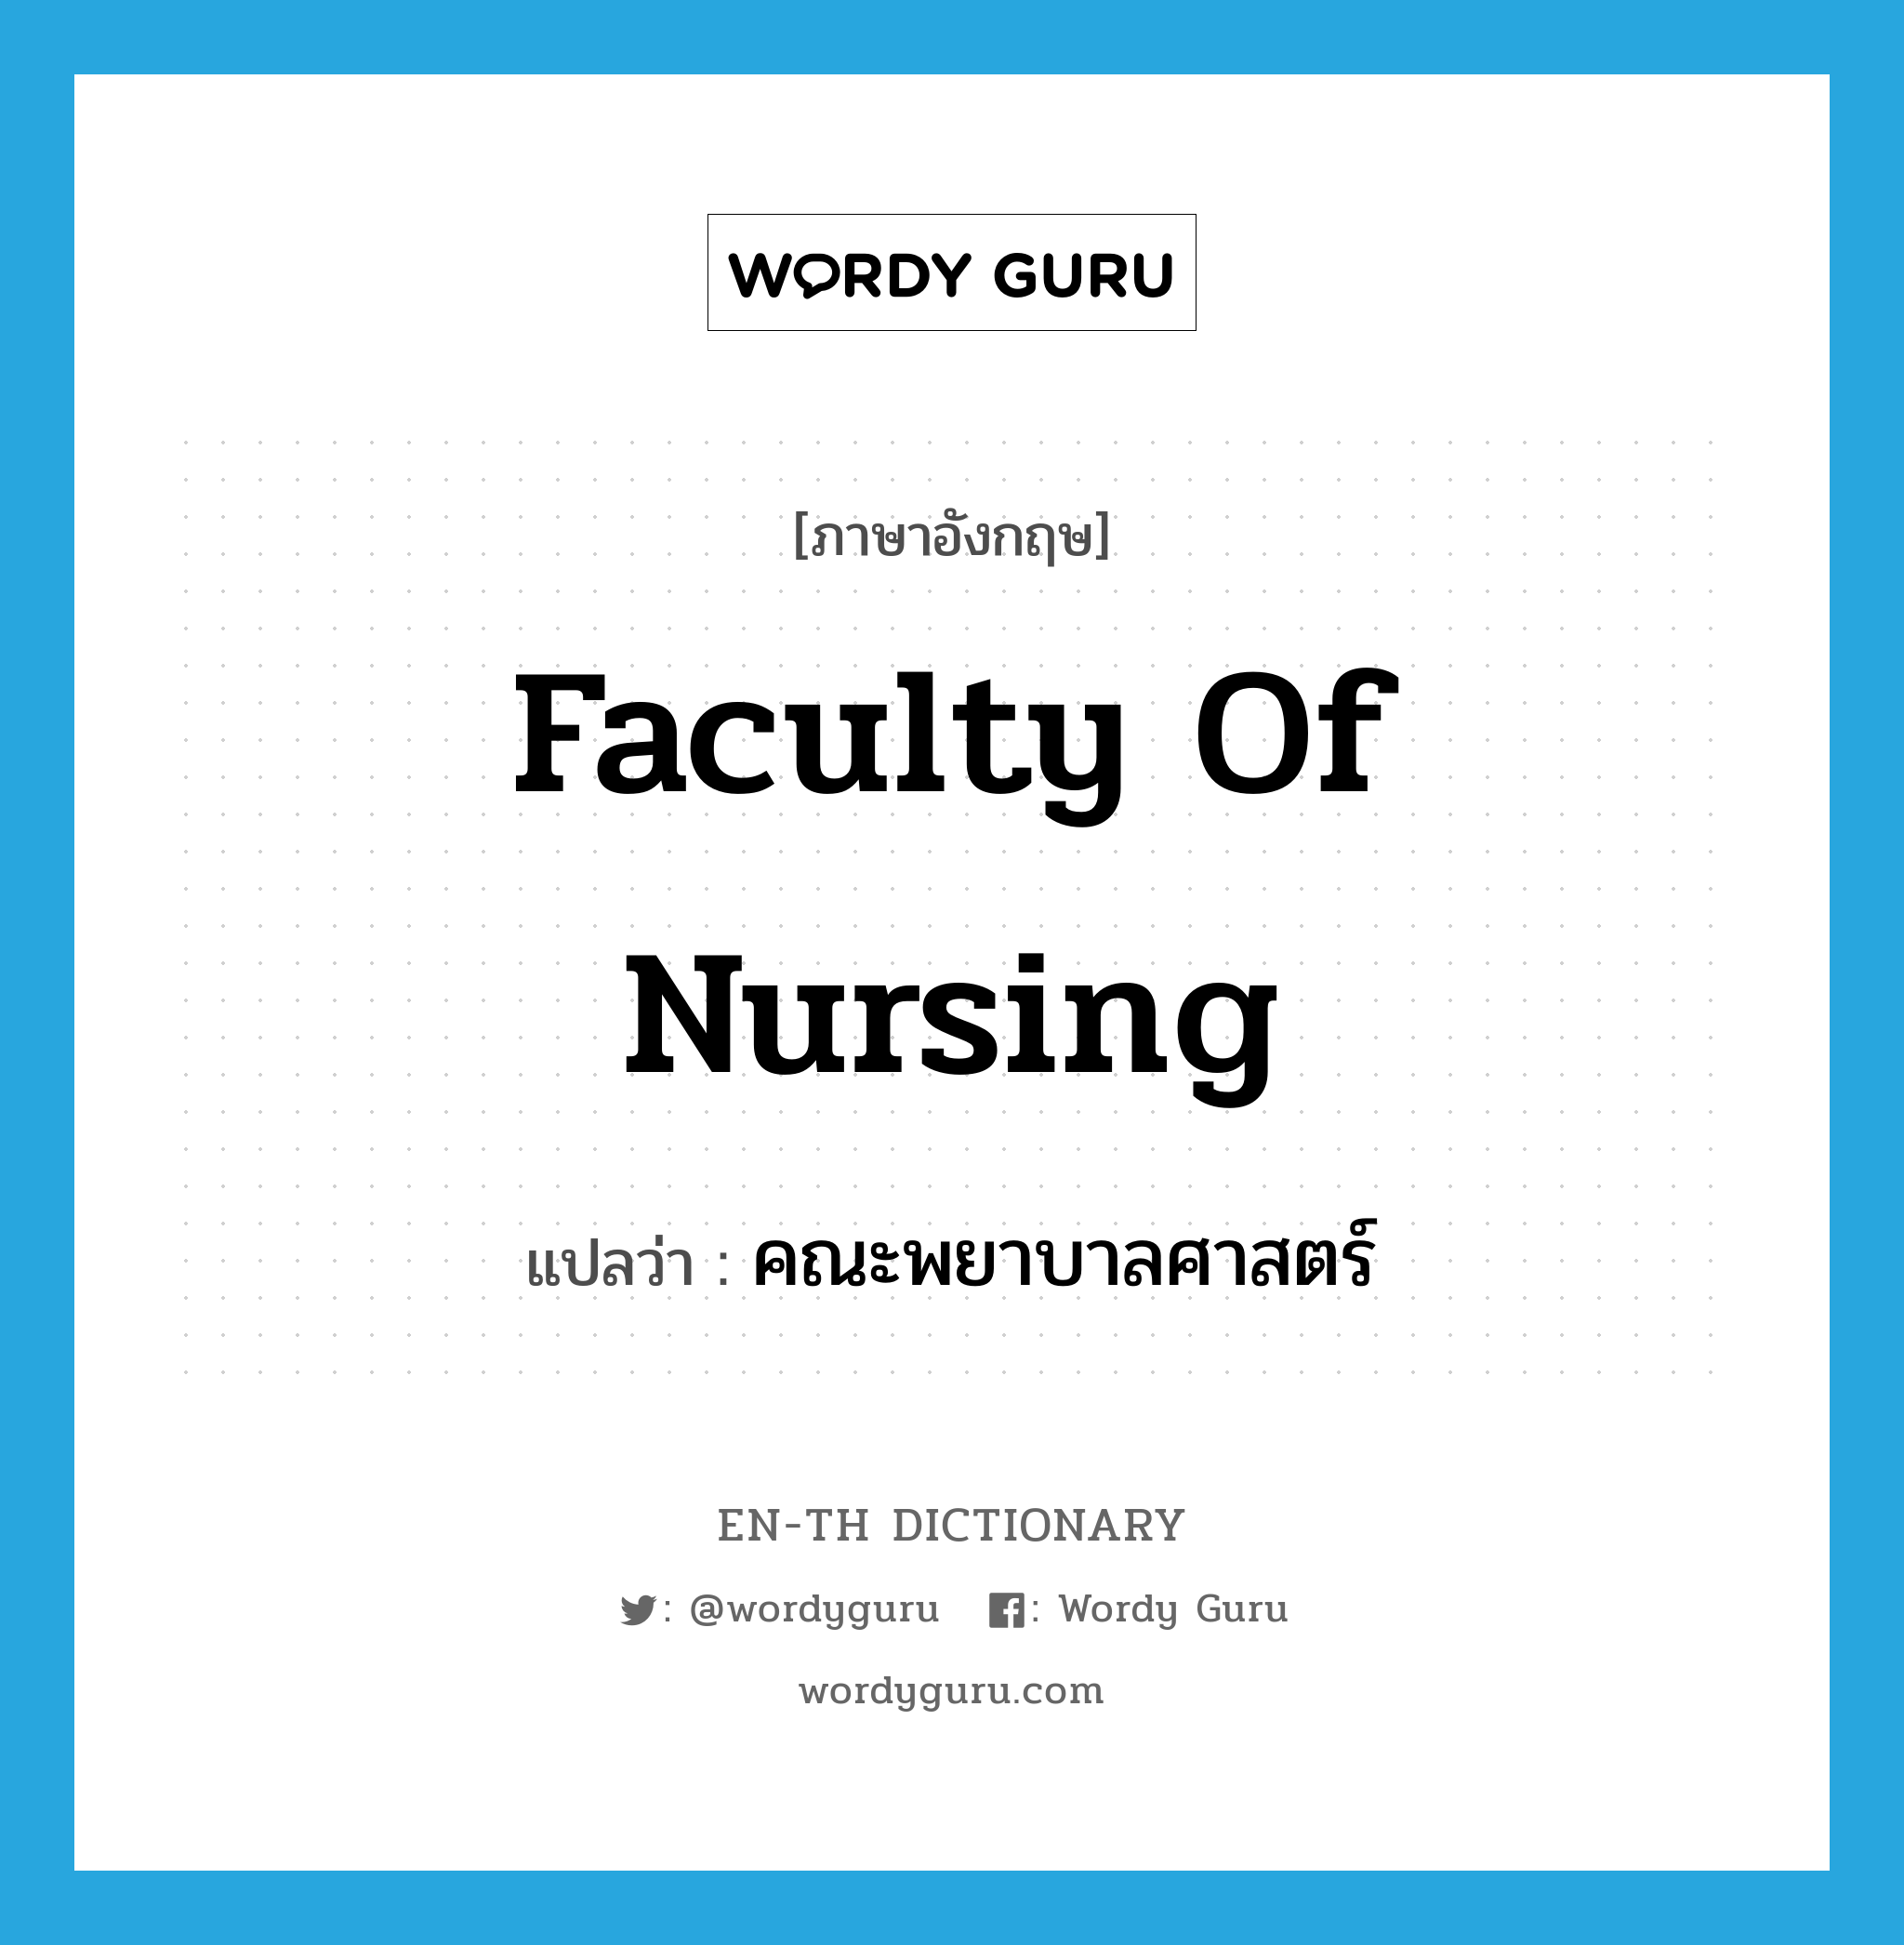 คณะพยาบาลศาสตร์ ภาษาอังกฤษ?, คำศัพท์ภาษาอังกฤษ คณะพยาบาลศาสตร์ แปลว่า Faculty of Nursing ประเภท N หมวด N